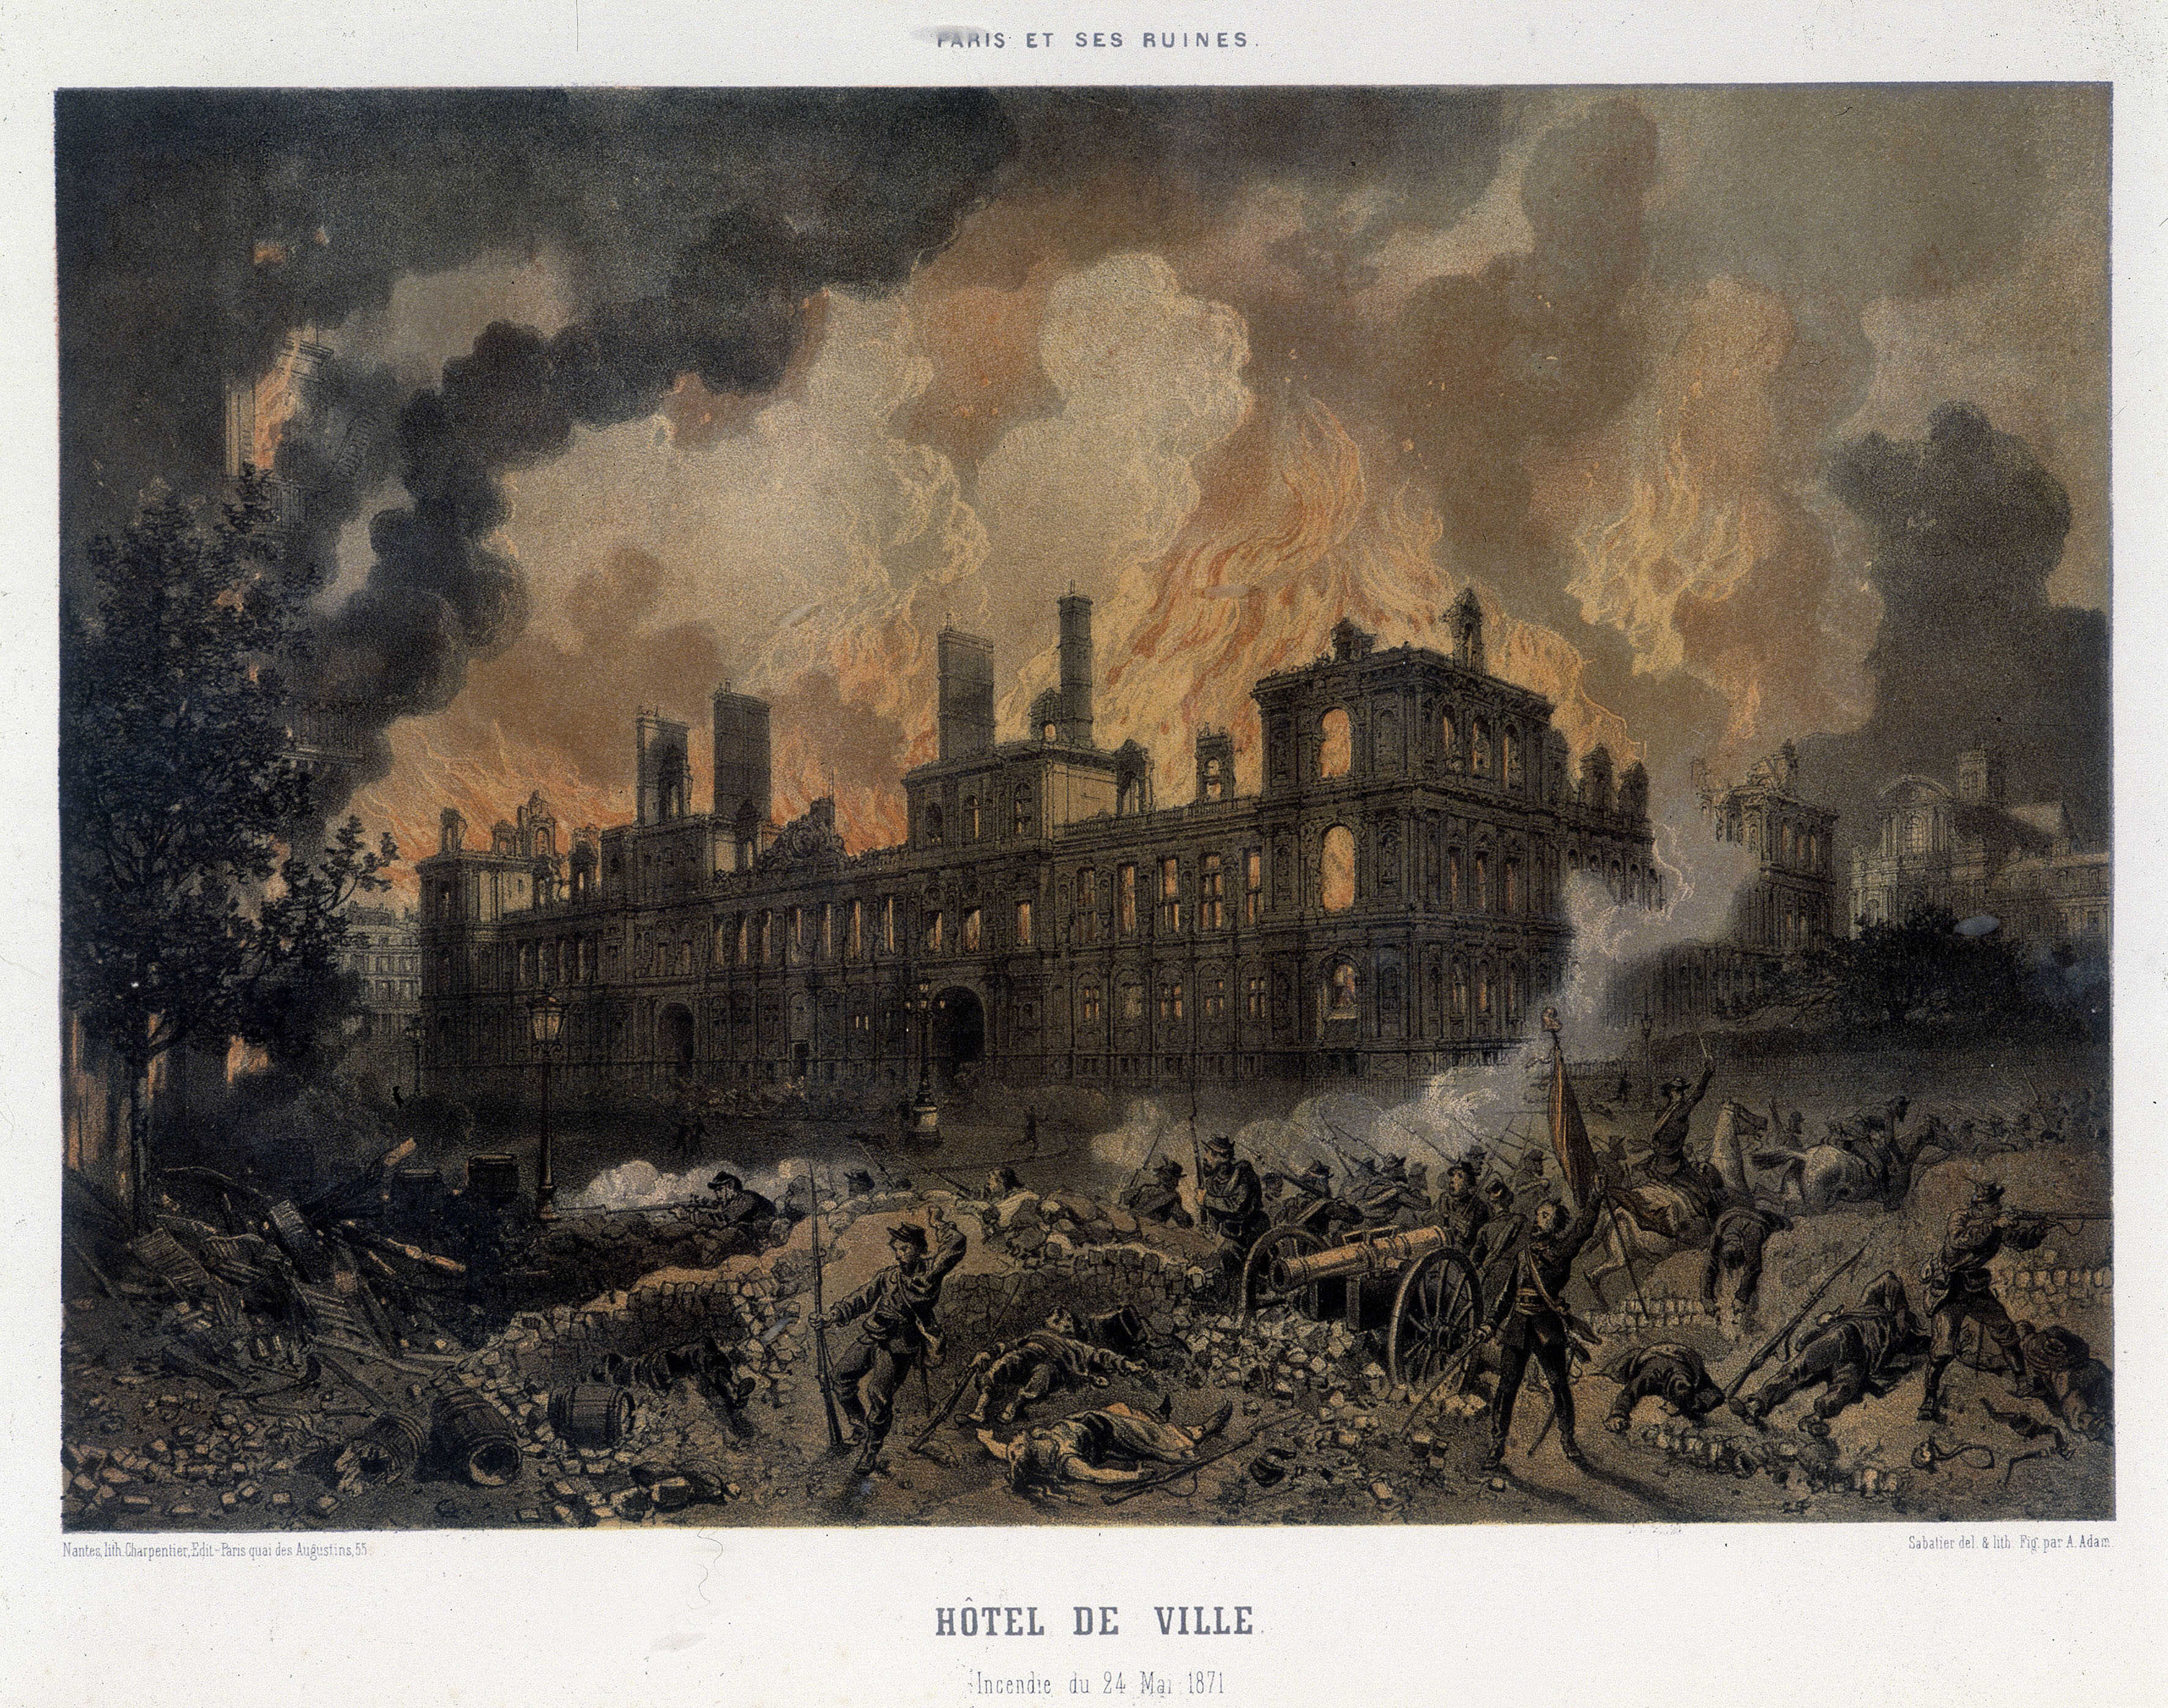 Commune de Paris : L'incendie de l'Hotel de ville de Paris le 24 mai 1871. Gravure de l'epoque.